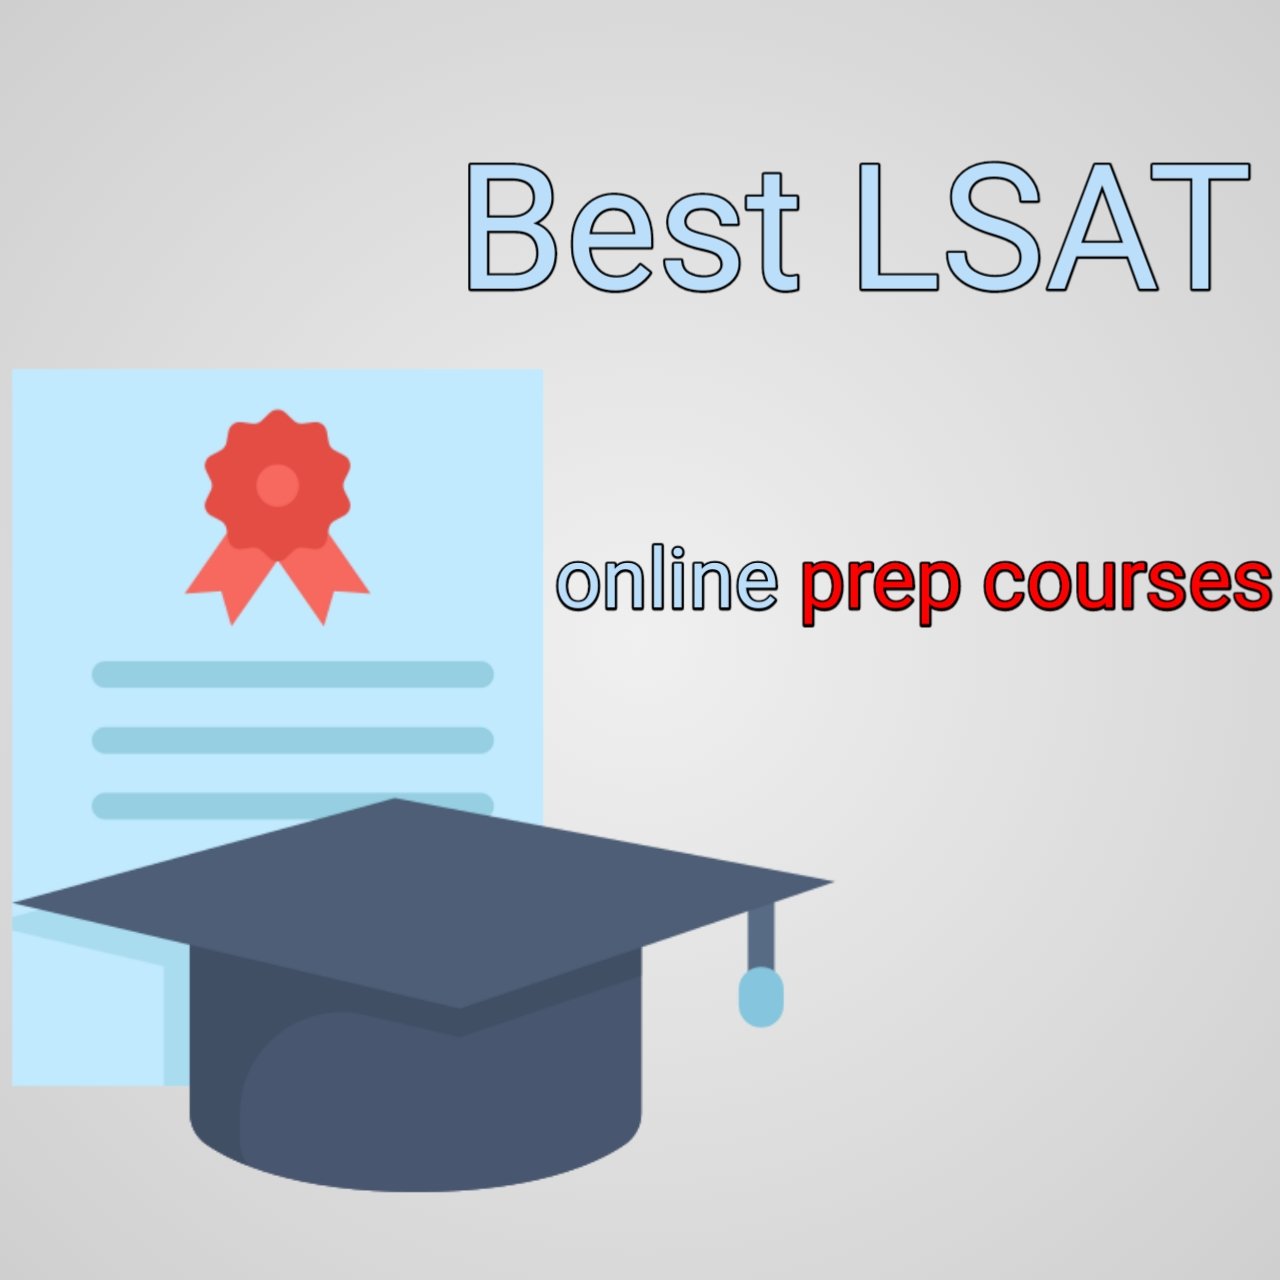 Best LSAT online prep courses